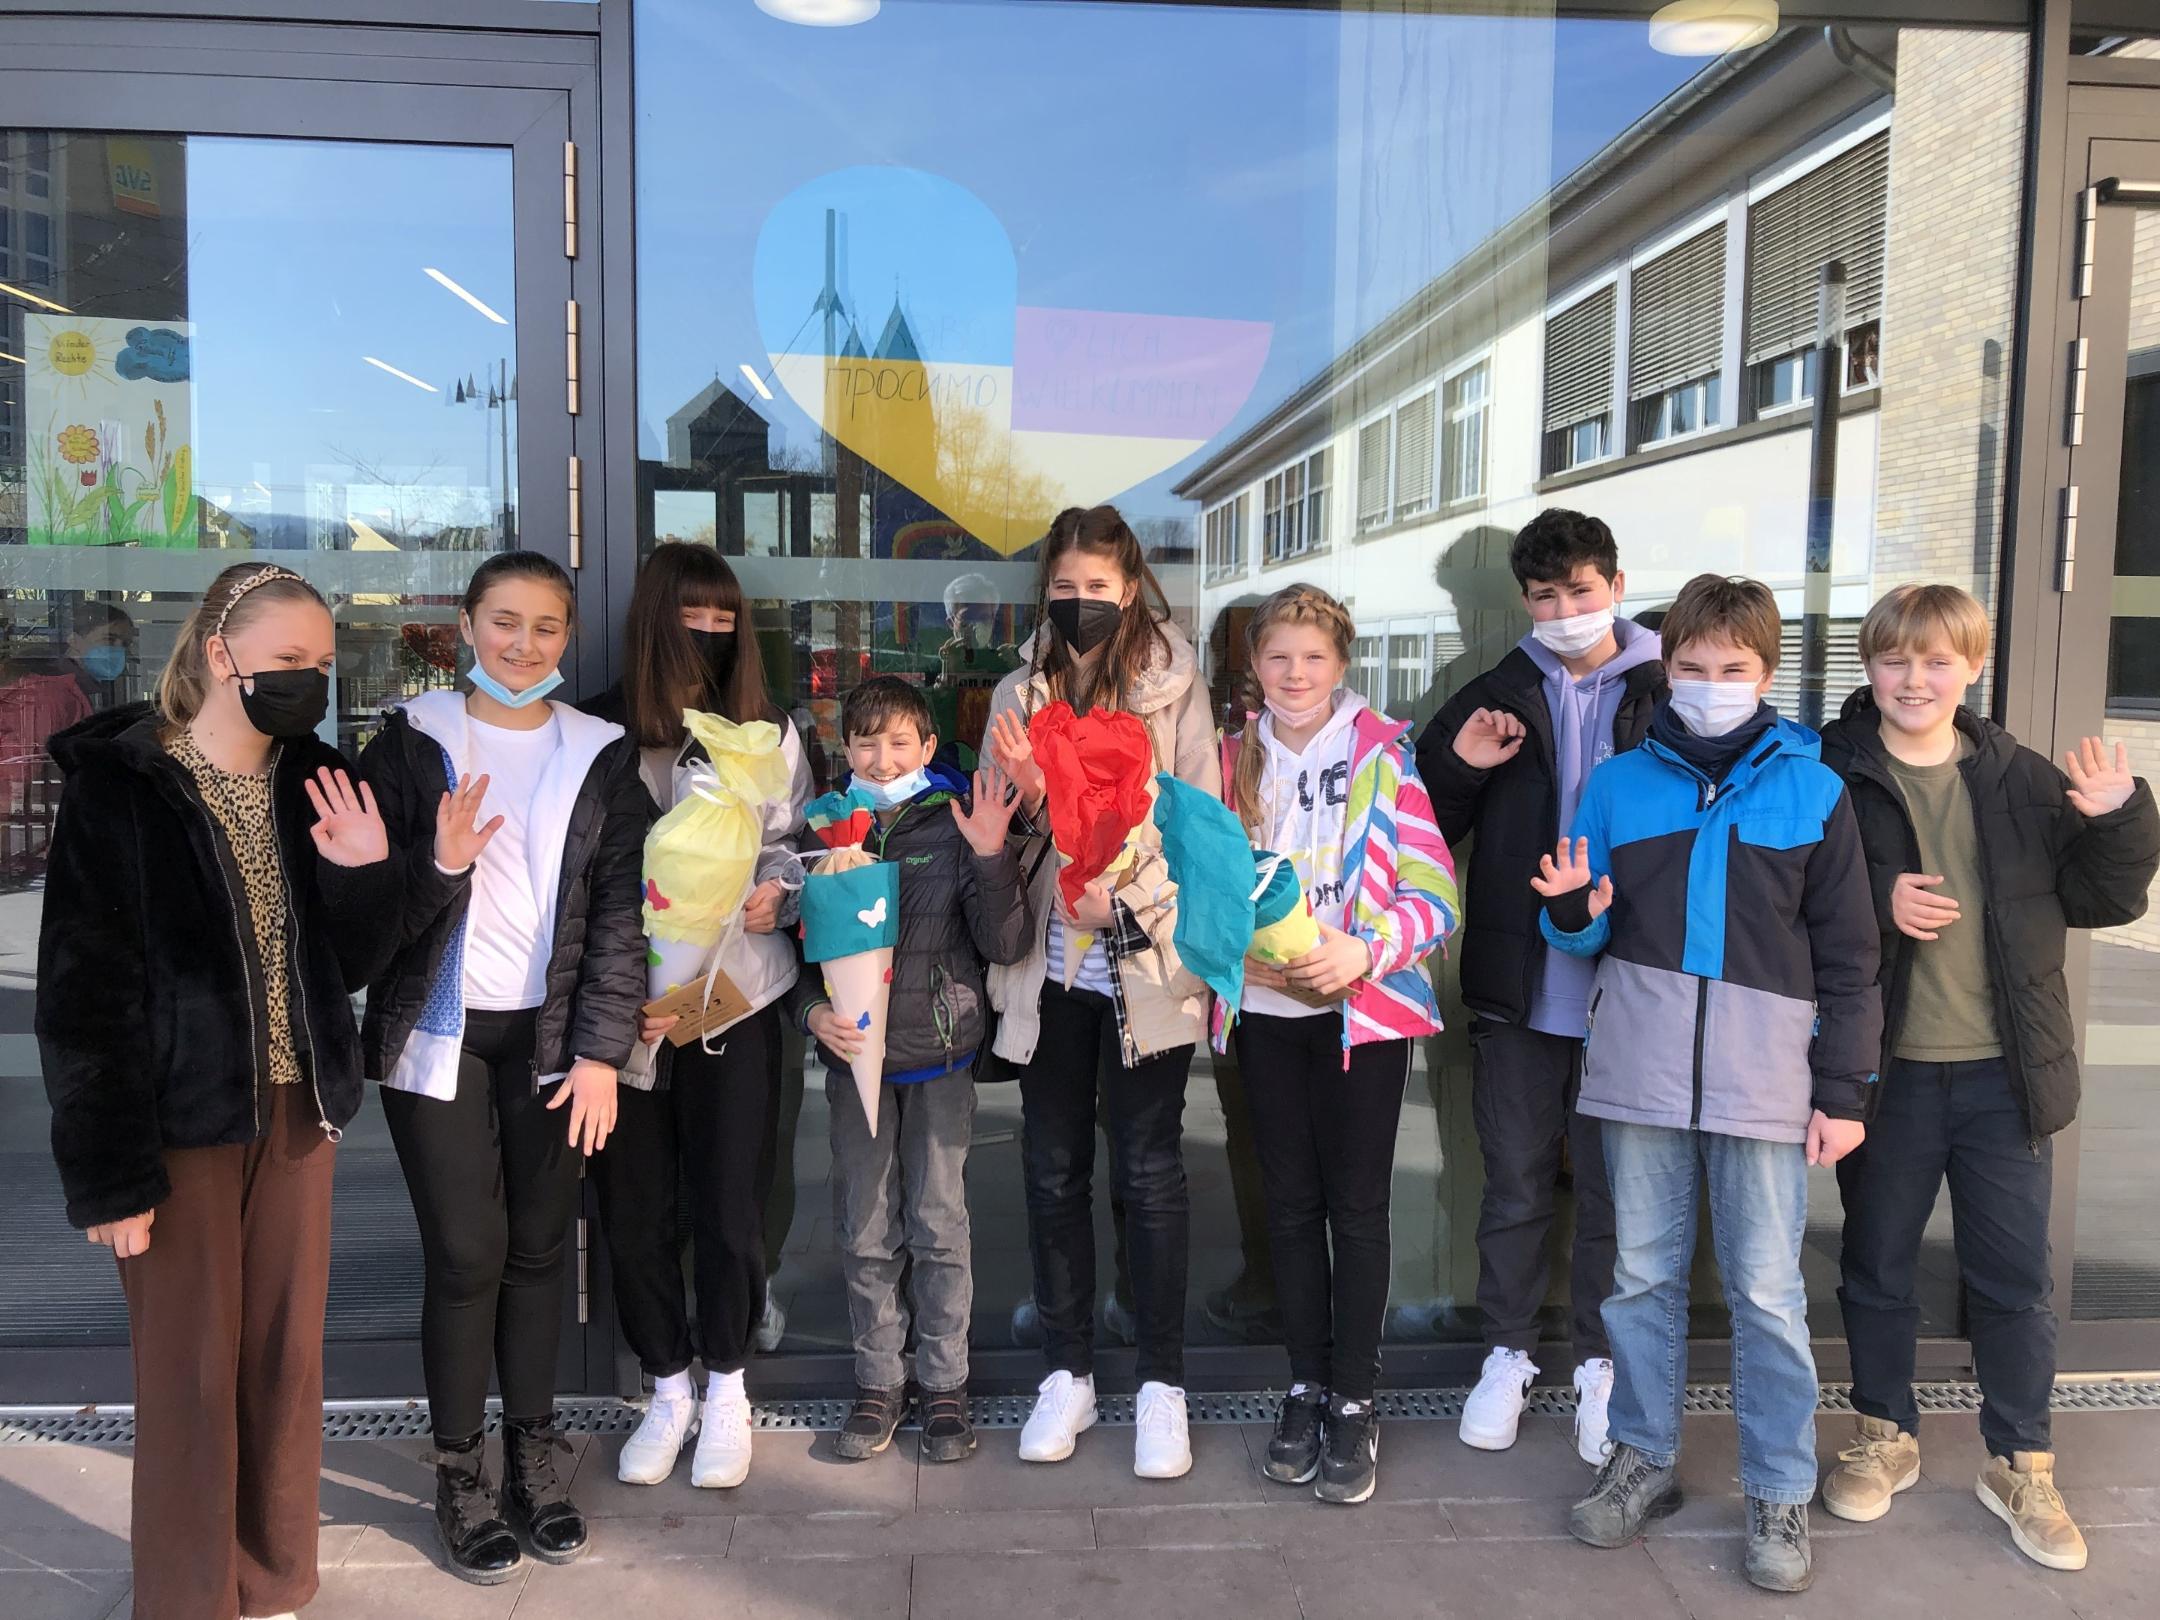 Vier ukrainische Kinder besuchen nun die St. Franziskus-Schule in Koblenz. Zum Start erhalten sie Schultüten und Unterstützung durch gleichaltrige Patinnen und Paten. (Foto: St. Franziskus-Schule)